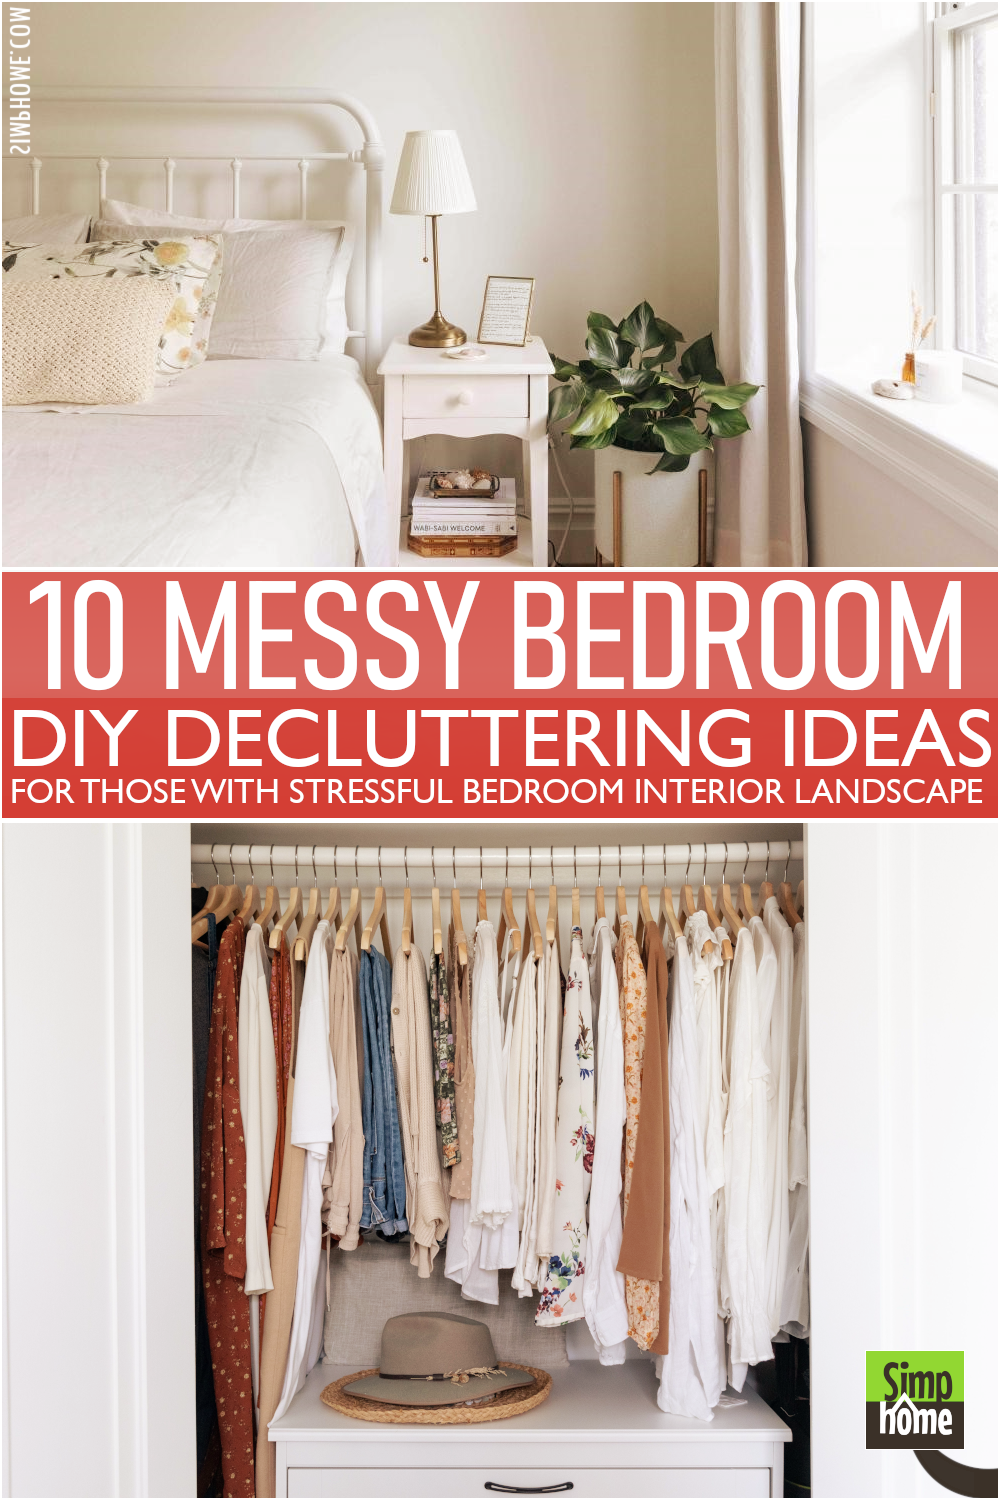 The 10 Messy Bedroom DIY Decluttering